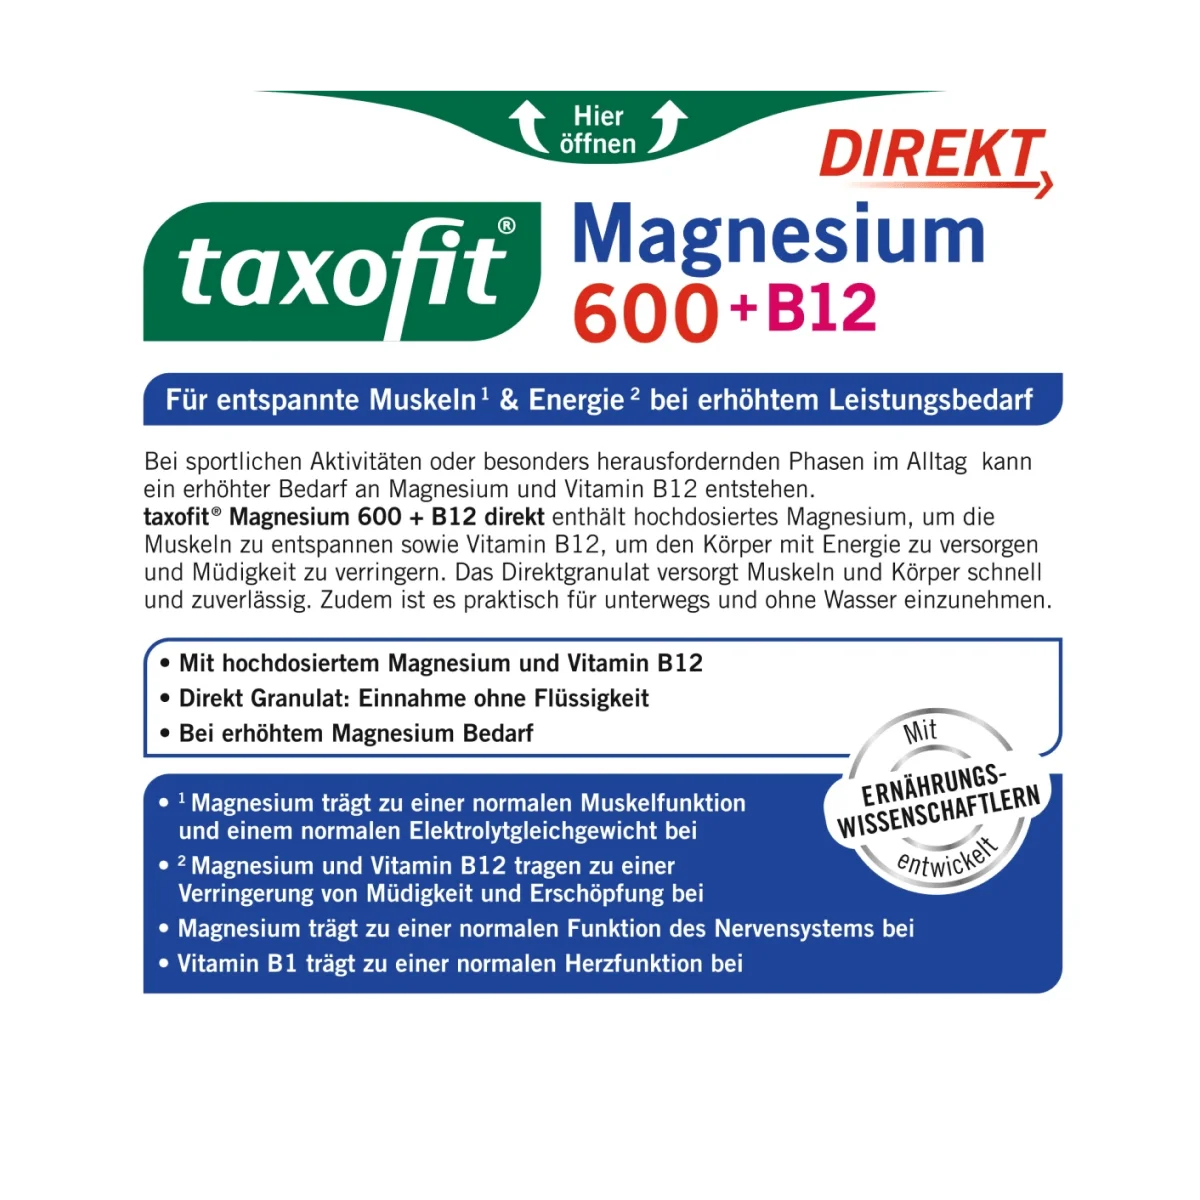 taxofit Magnesium 600 + B12 Direkt-Granulat 20 Stk, 40 g